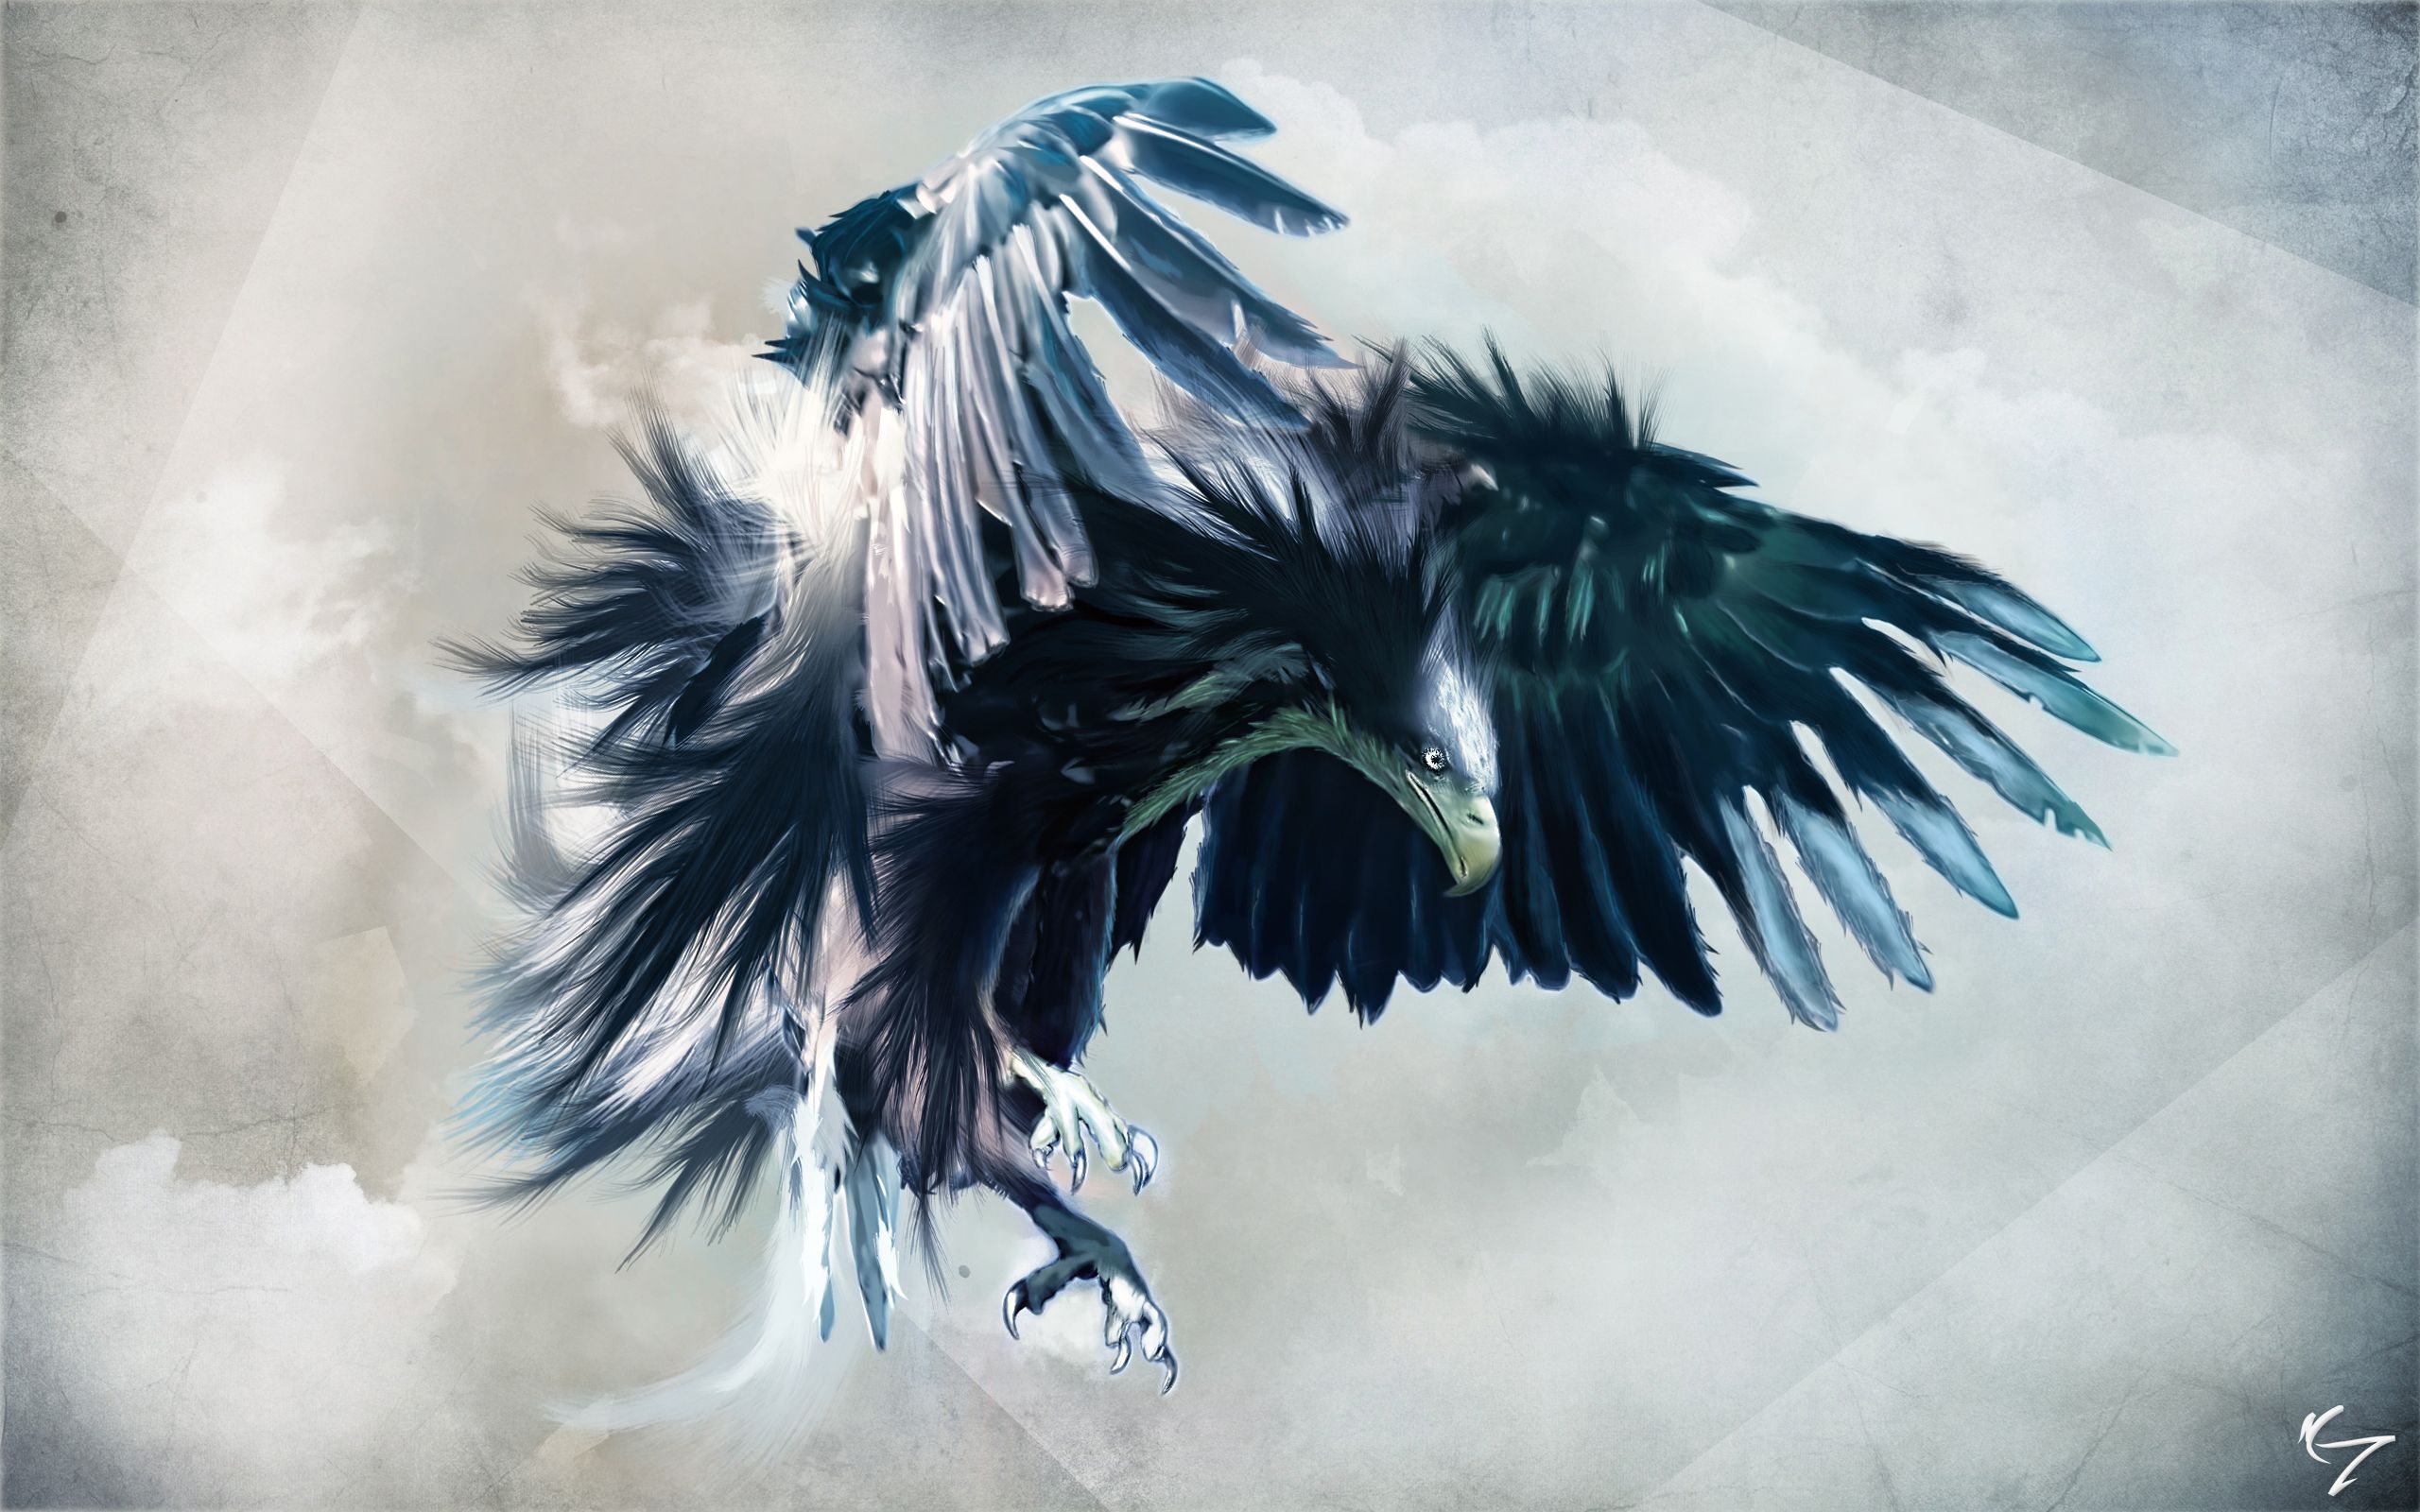  Adler Hintergrundbild 2560x1600. Adler HD Wallpaper und Hintergründe